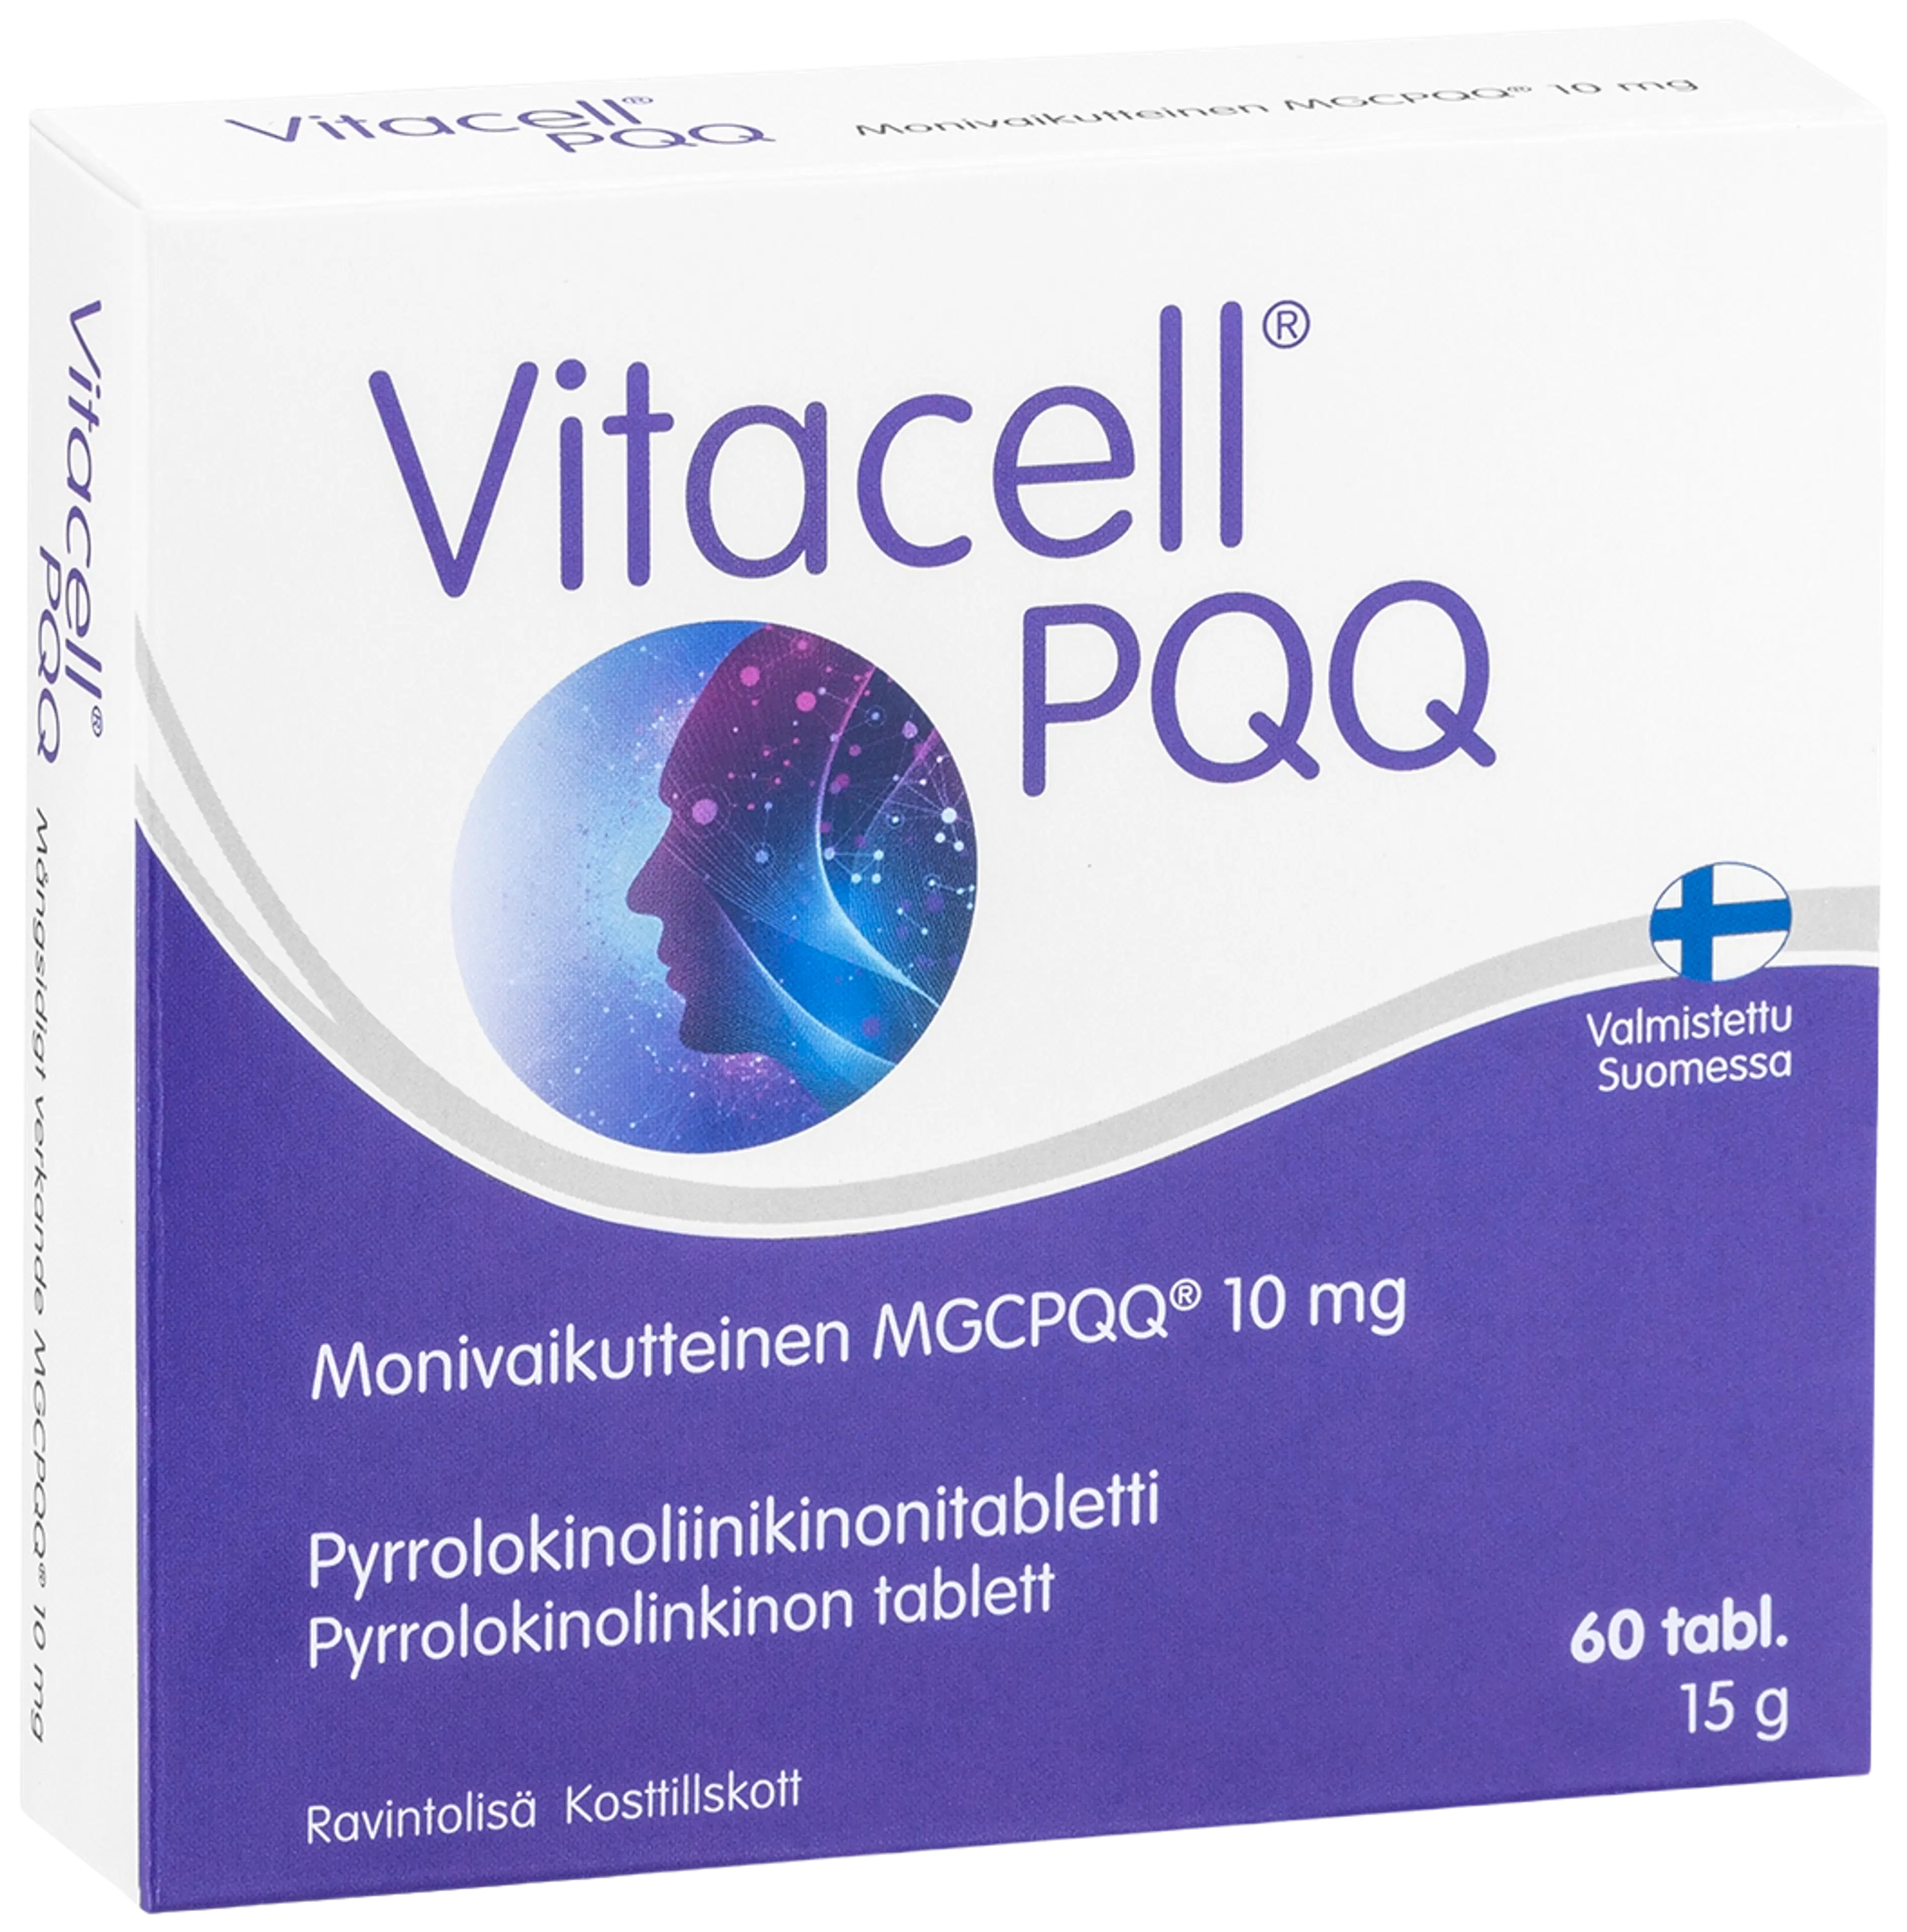 Vitacell PQQ pyrrolokinoliinikinonitabletti 60 tabl